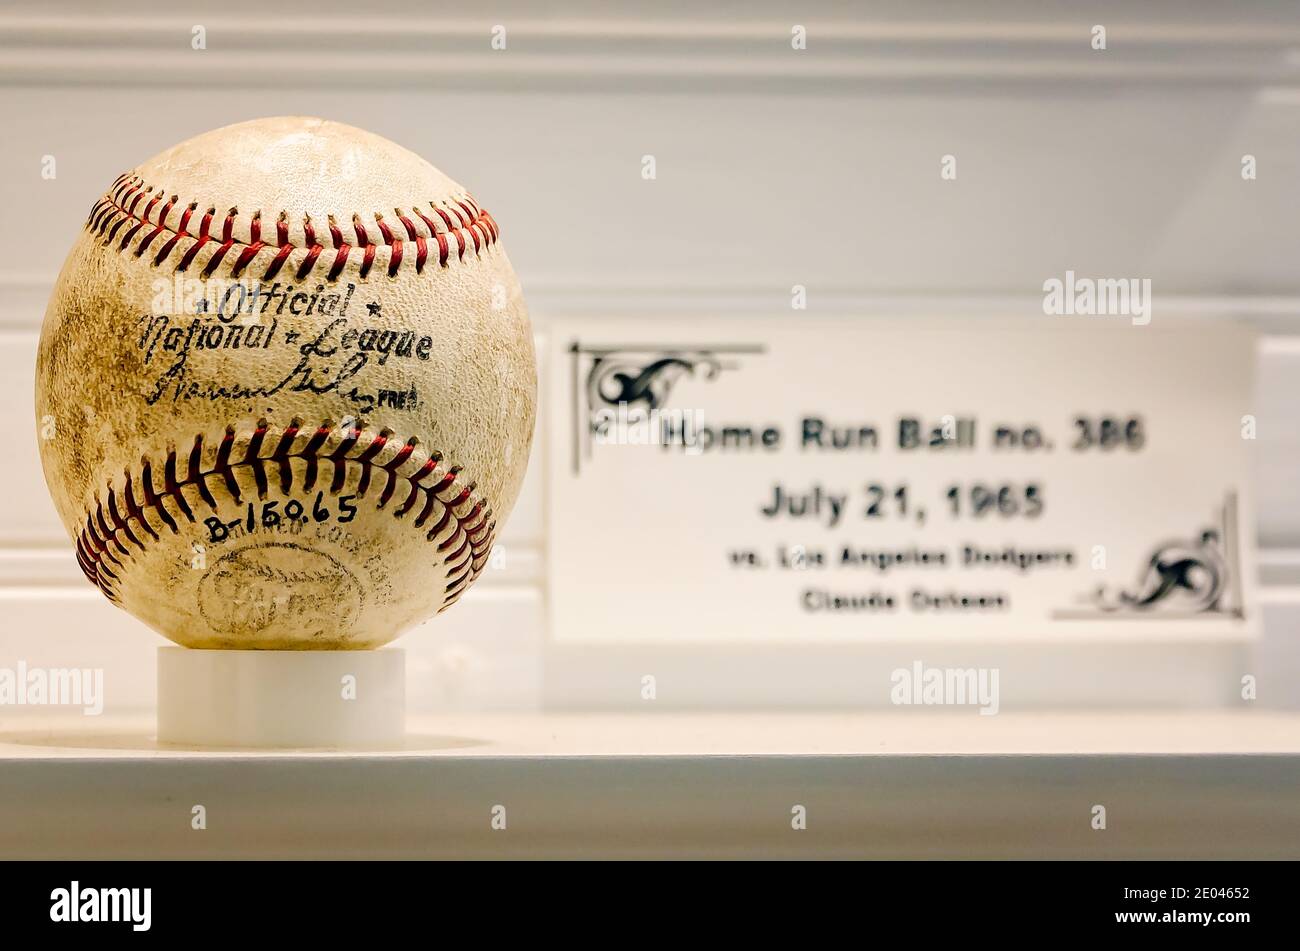 Ein Baseball für Hank Aarons 386. Heimlauf wird im Hank Aaron Childhood Home and Museum, 23. August 2017, in Mobile, Alabama, ausgestellt. Stockfoto